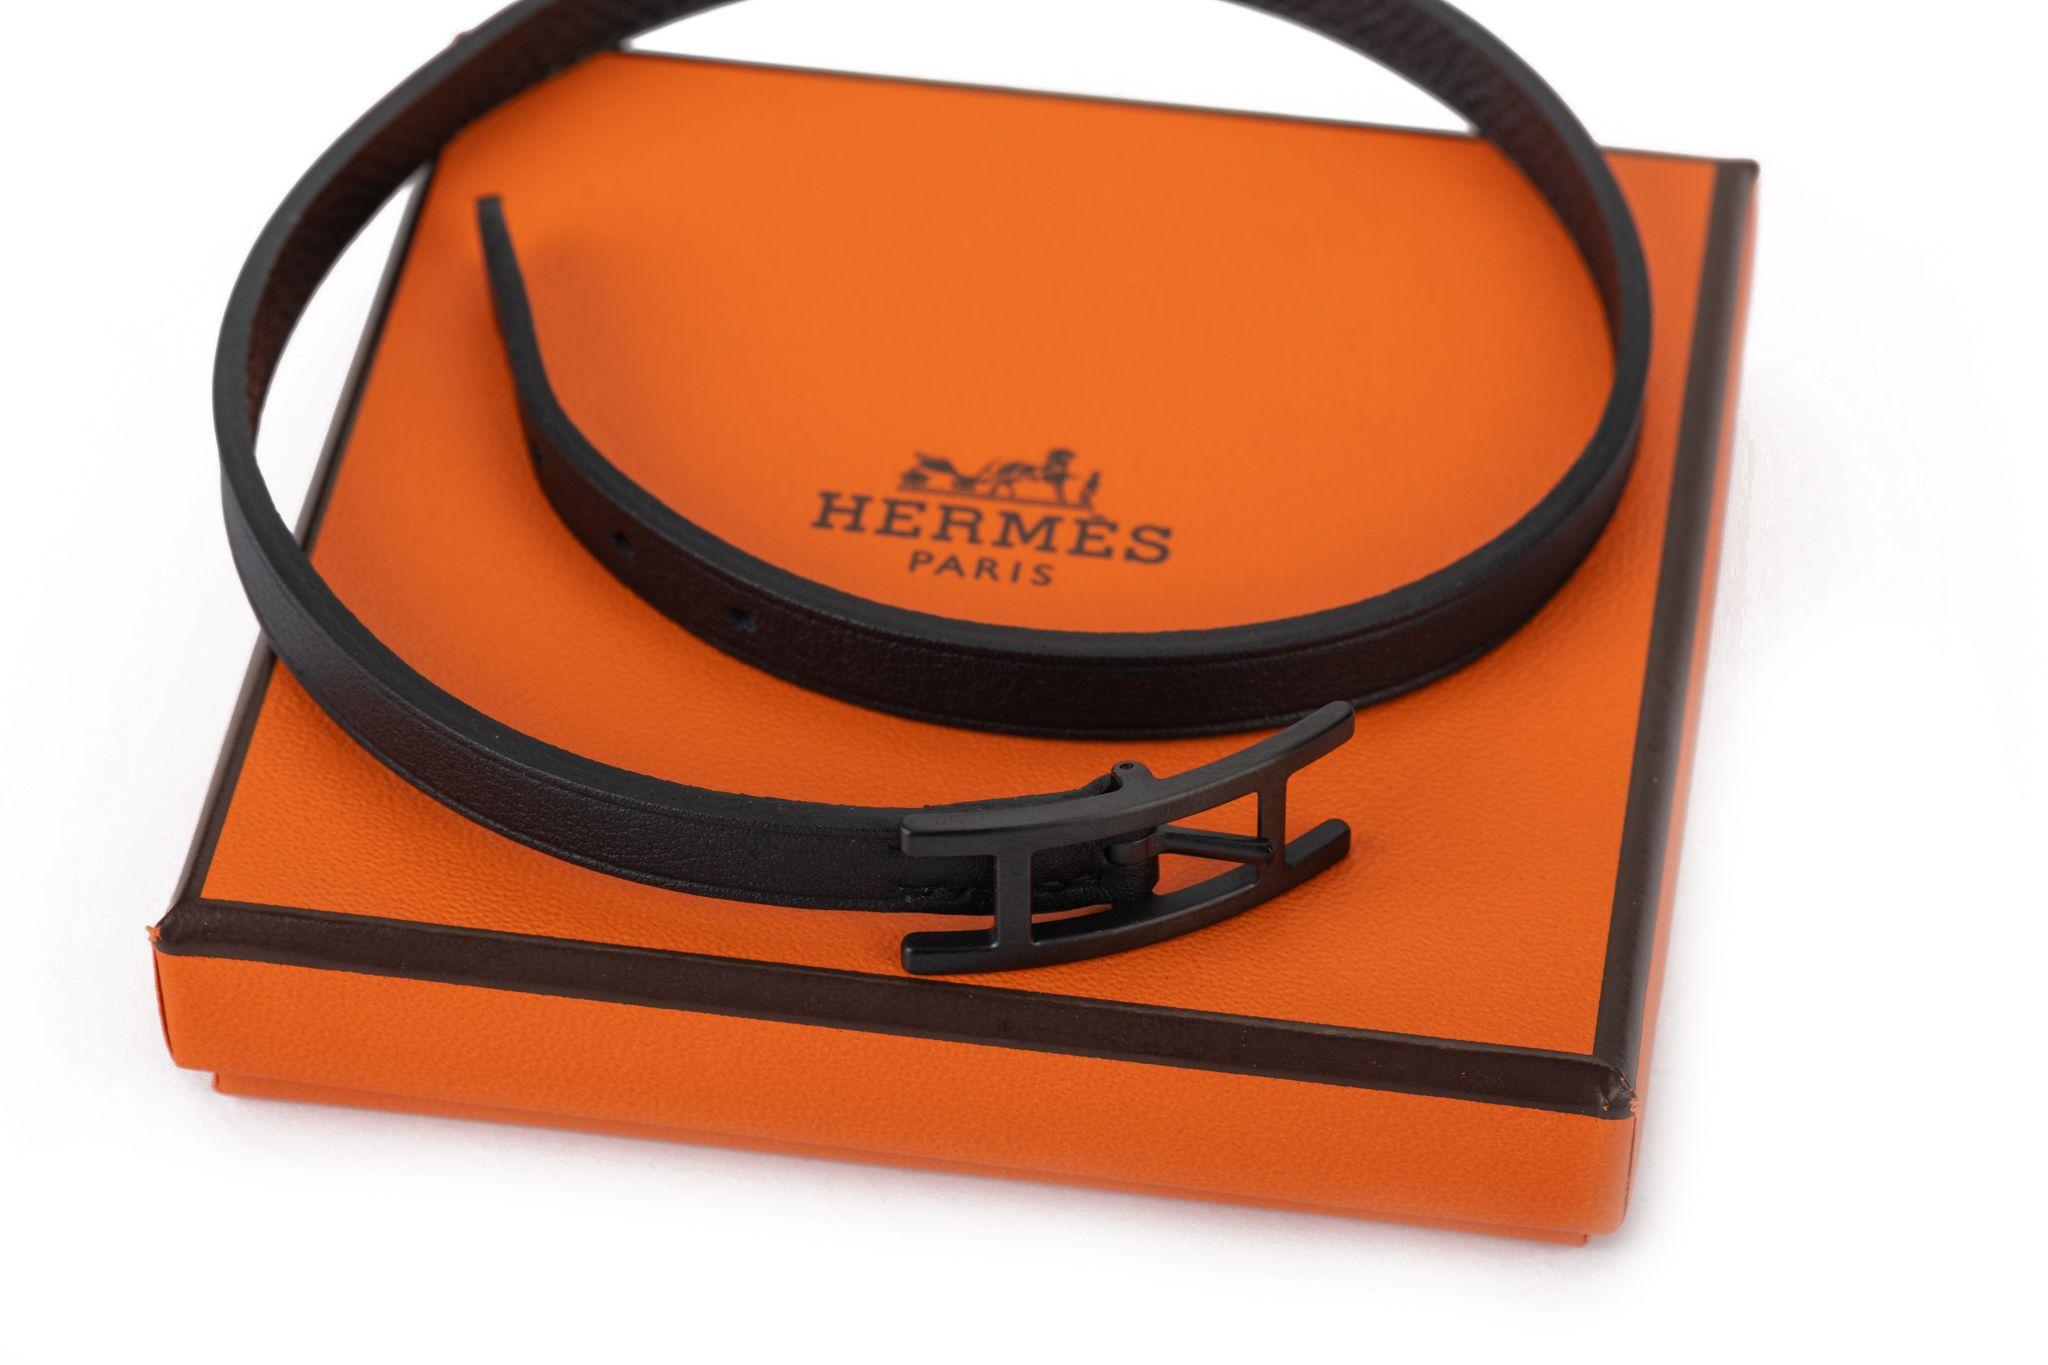 Hermès limitierte Auflage so schwarz Doppel Hapi-Armband. Brandneu mit Original-Schutzumschlag und -Box.